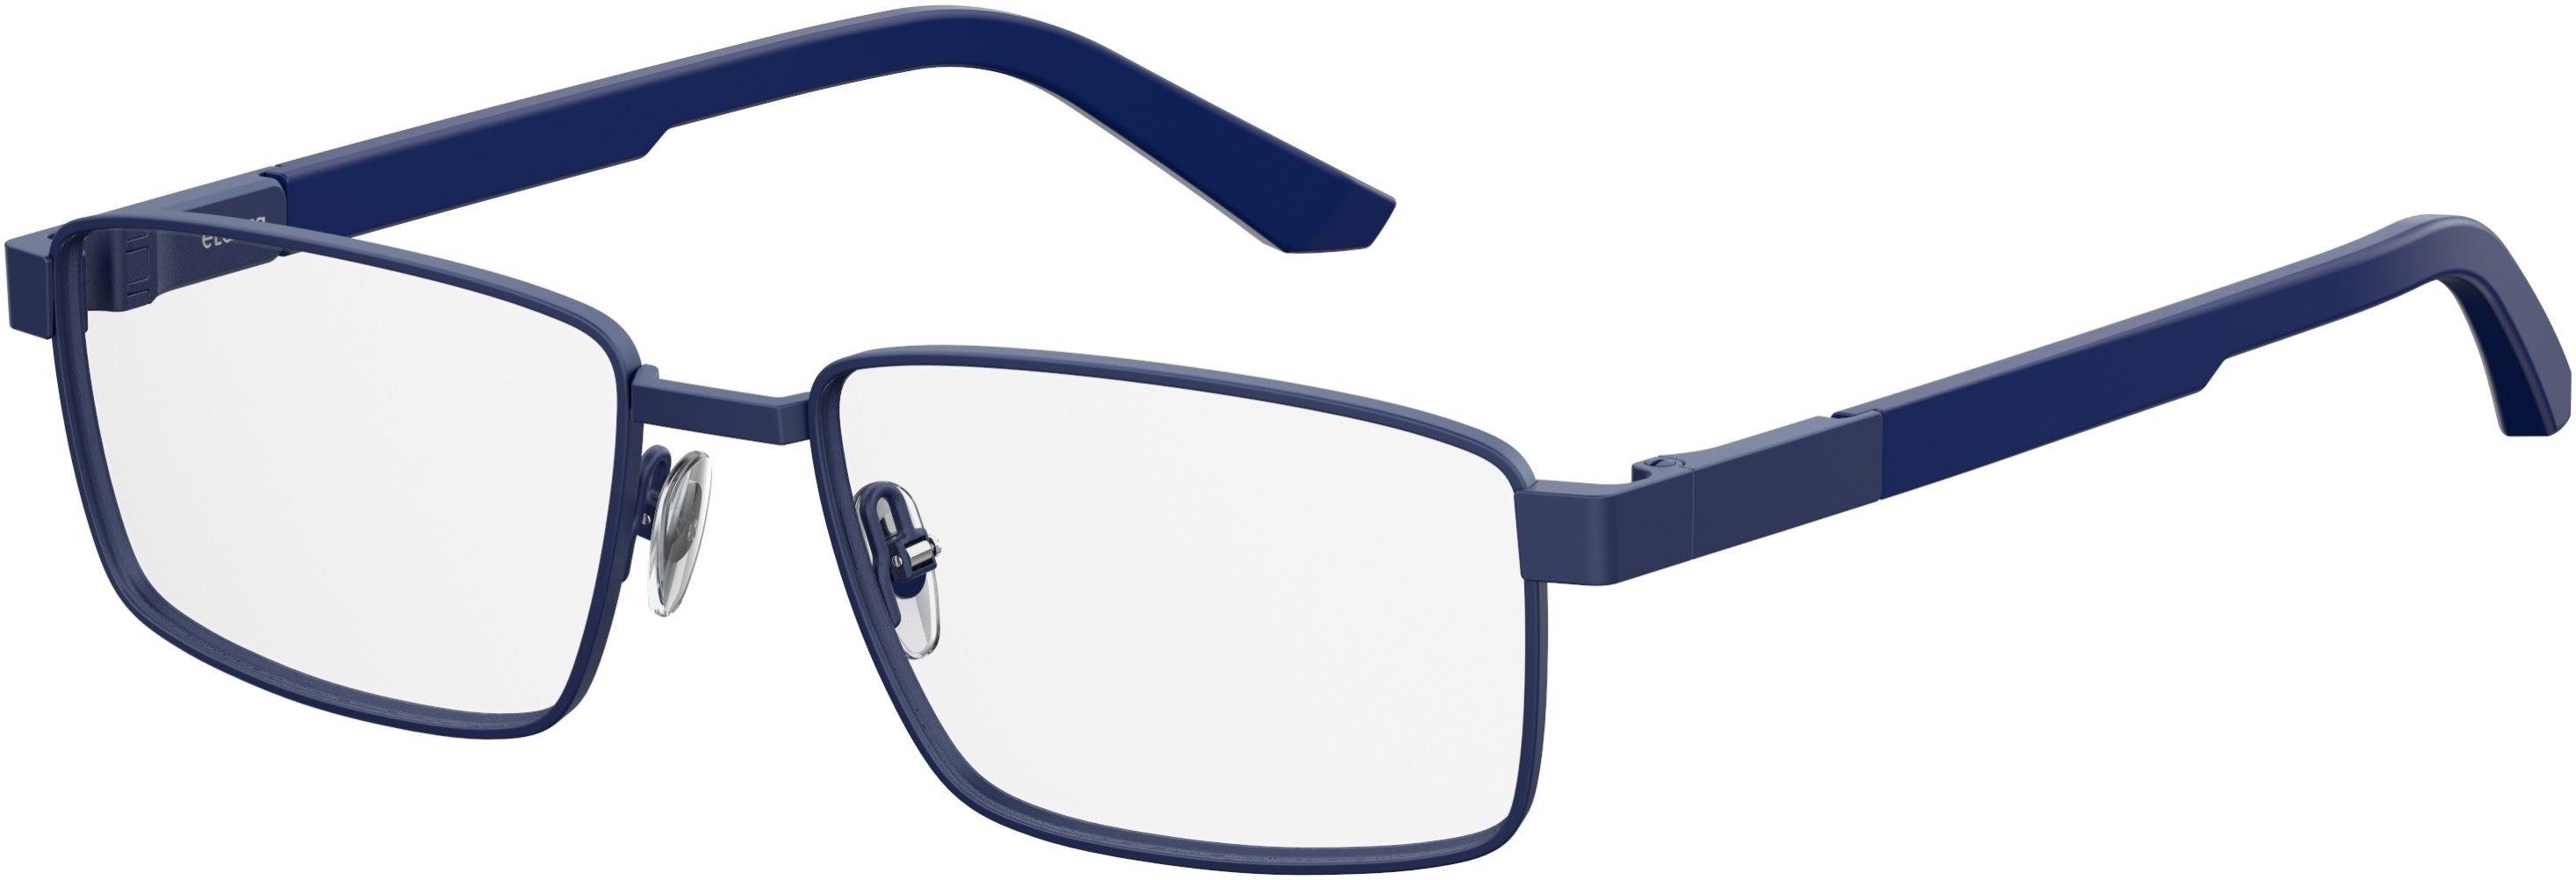  Elasta 3115 Rectangular Eyeglasses 0156-0156  Matte Blue (00 Demo Lens)